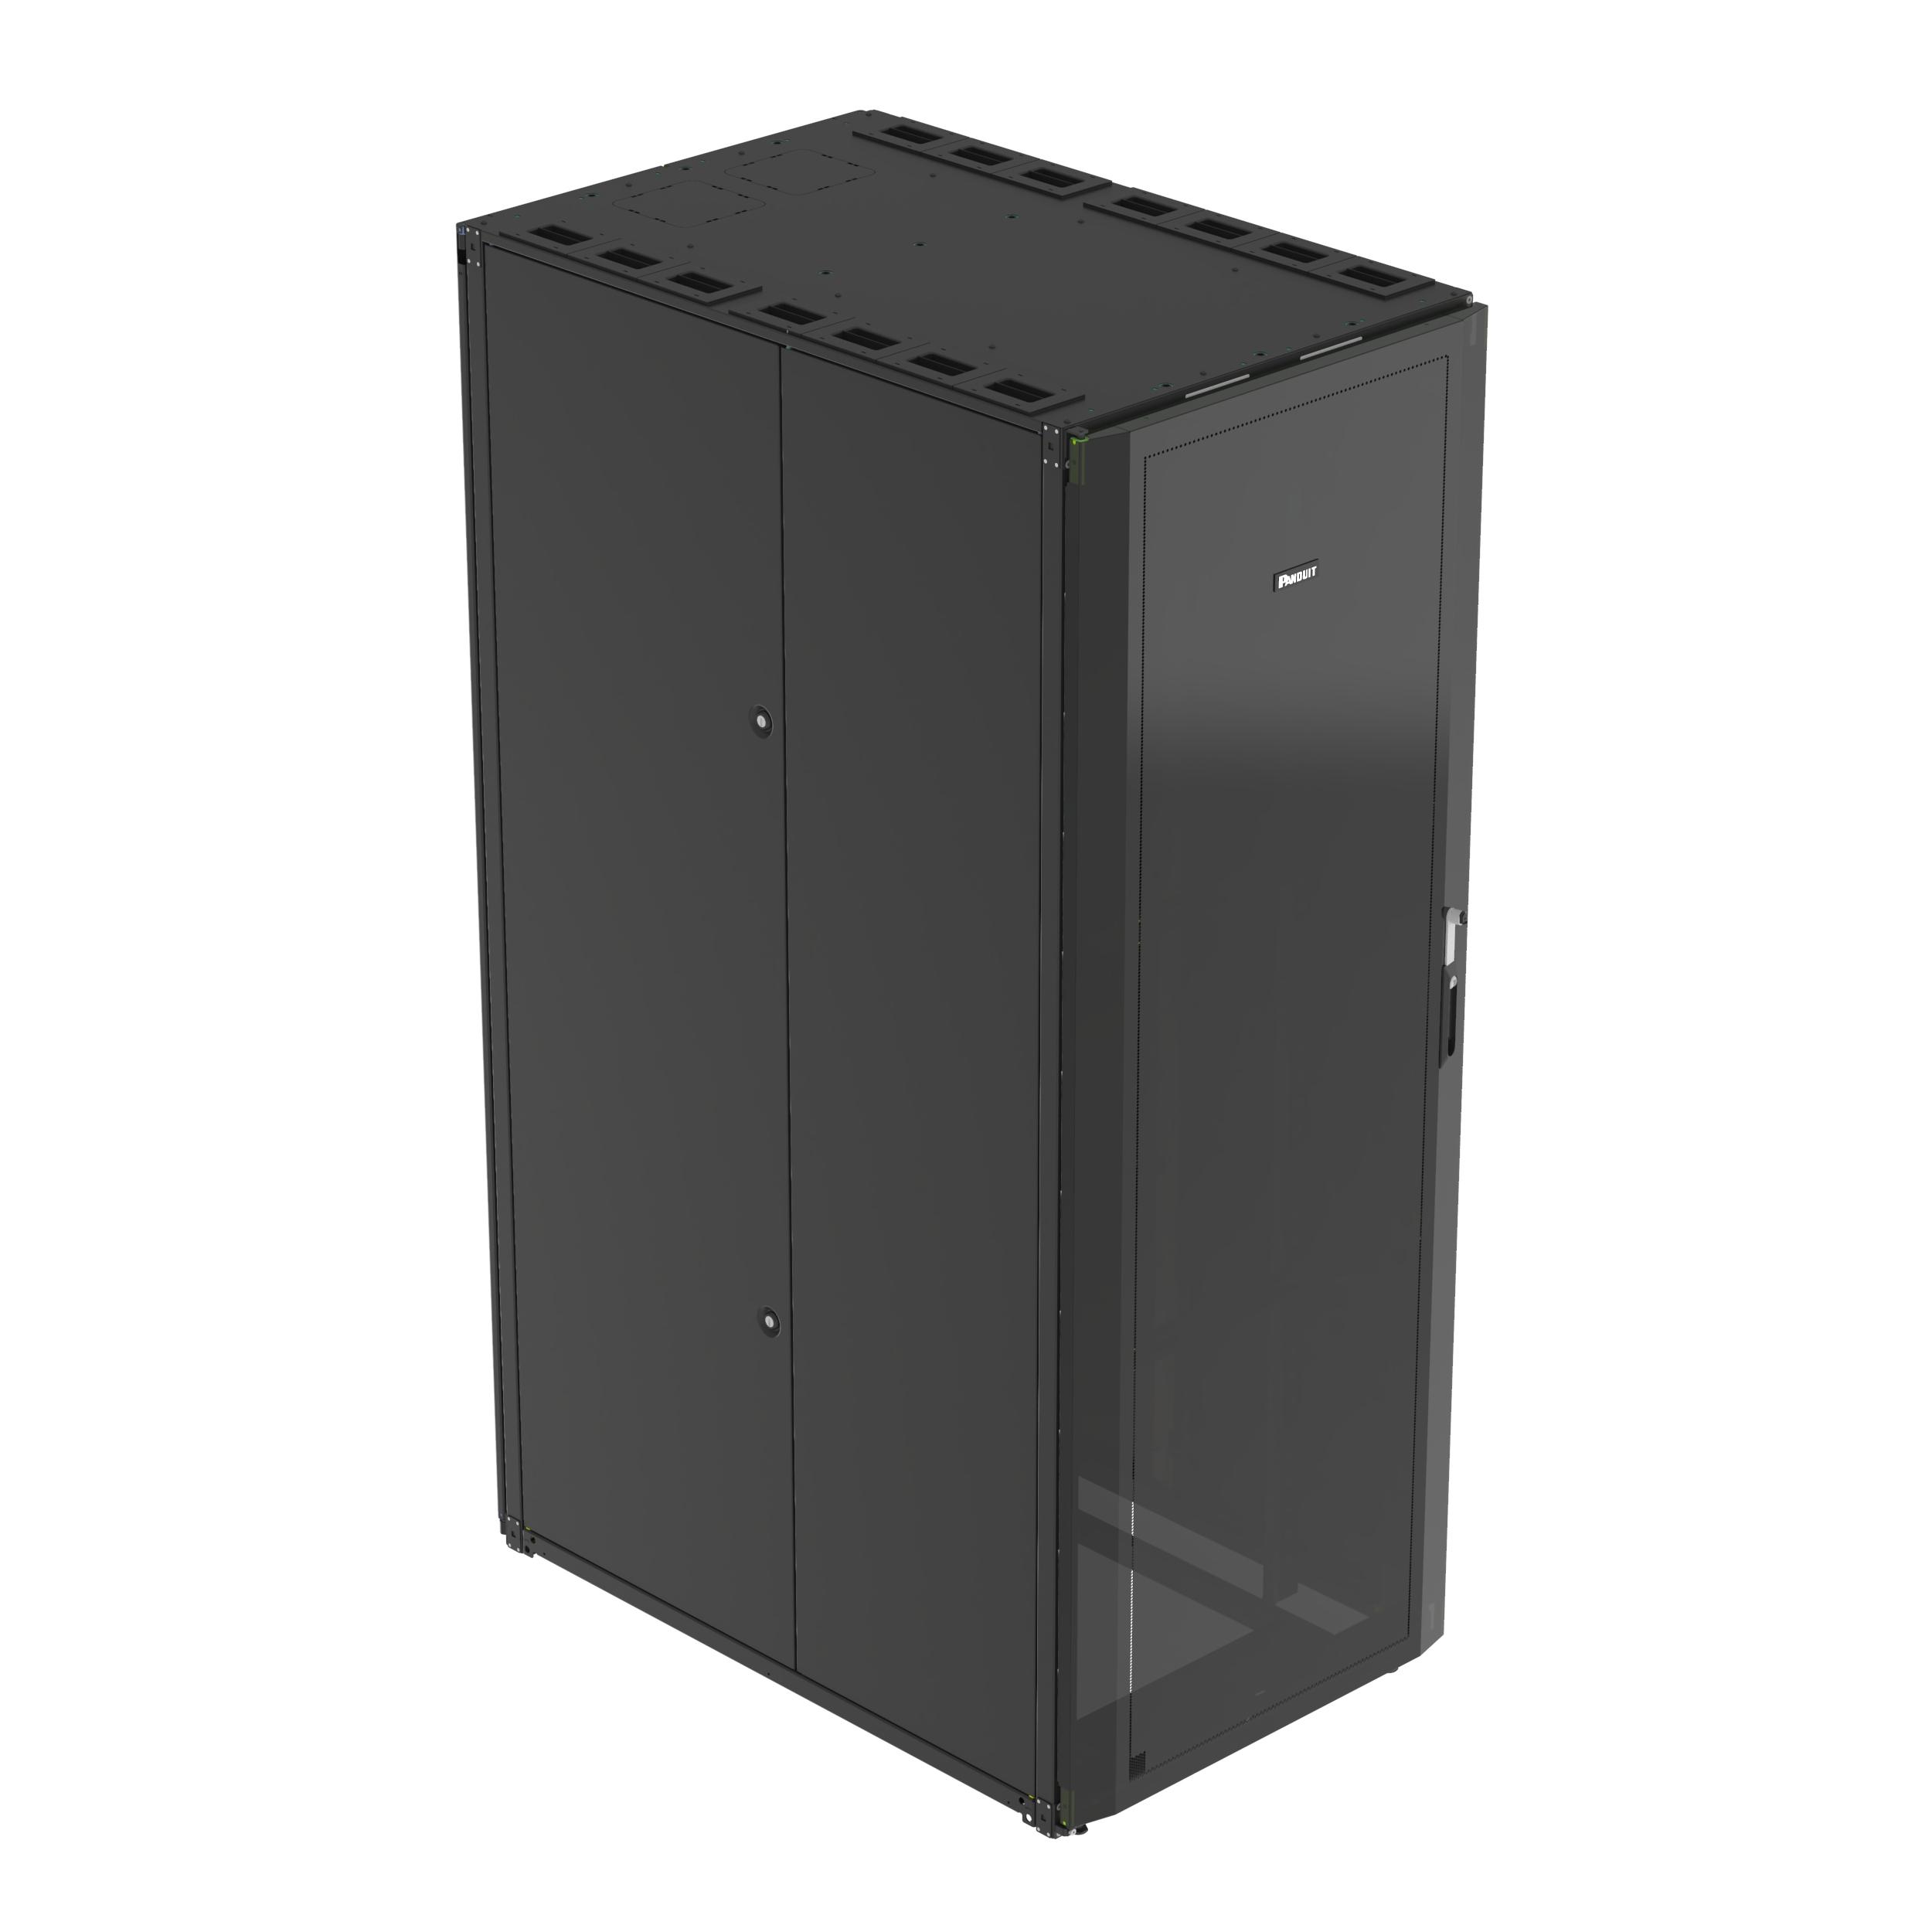 Panduit S6822B Net-Access™ S-Type Cabinet, 48 RU, Black, 600mm Wide